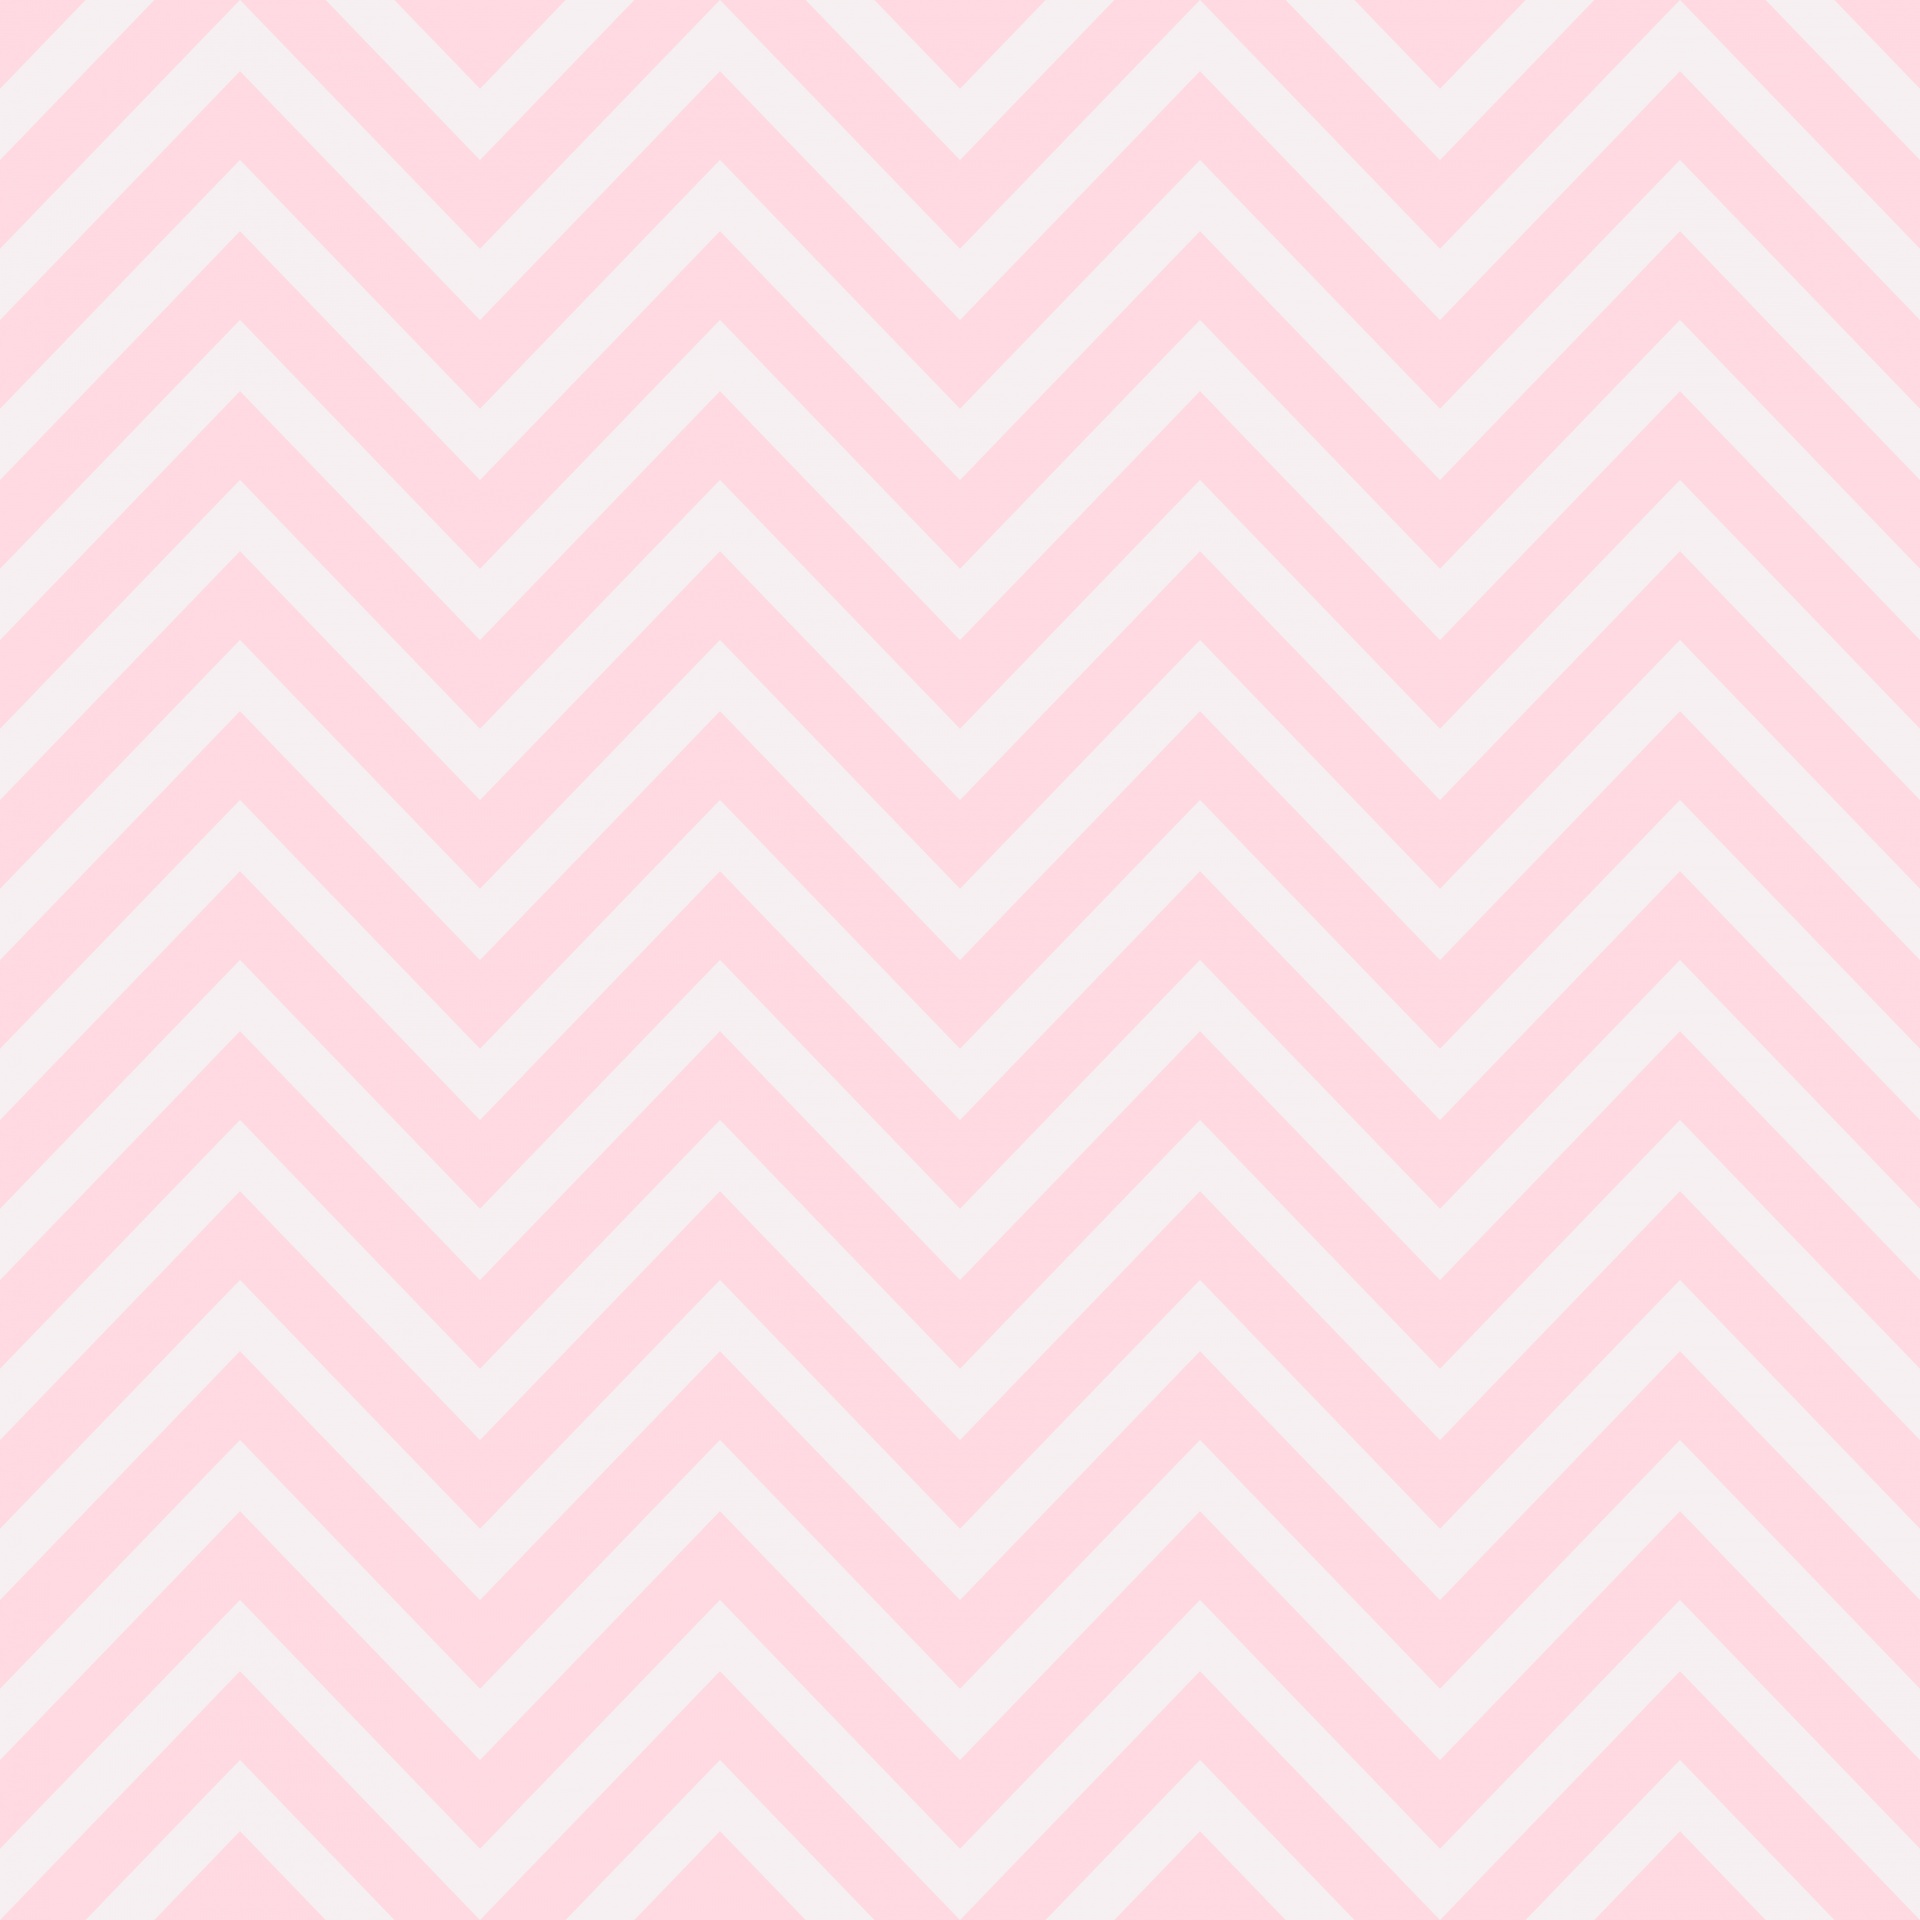 Chevron padrão de ziguezague rosa